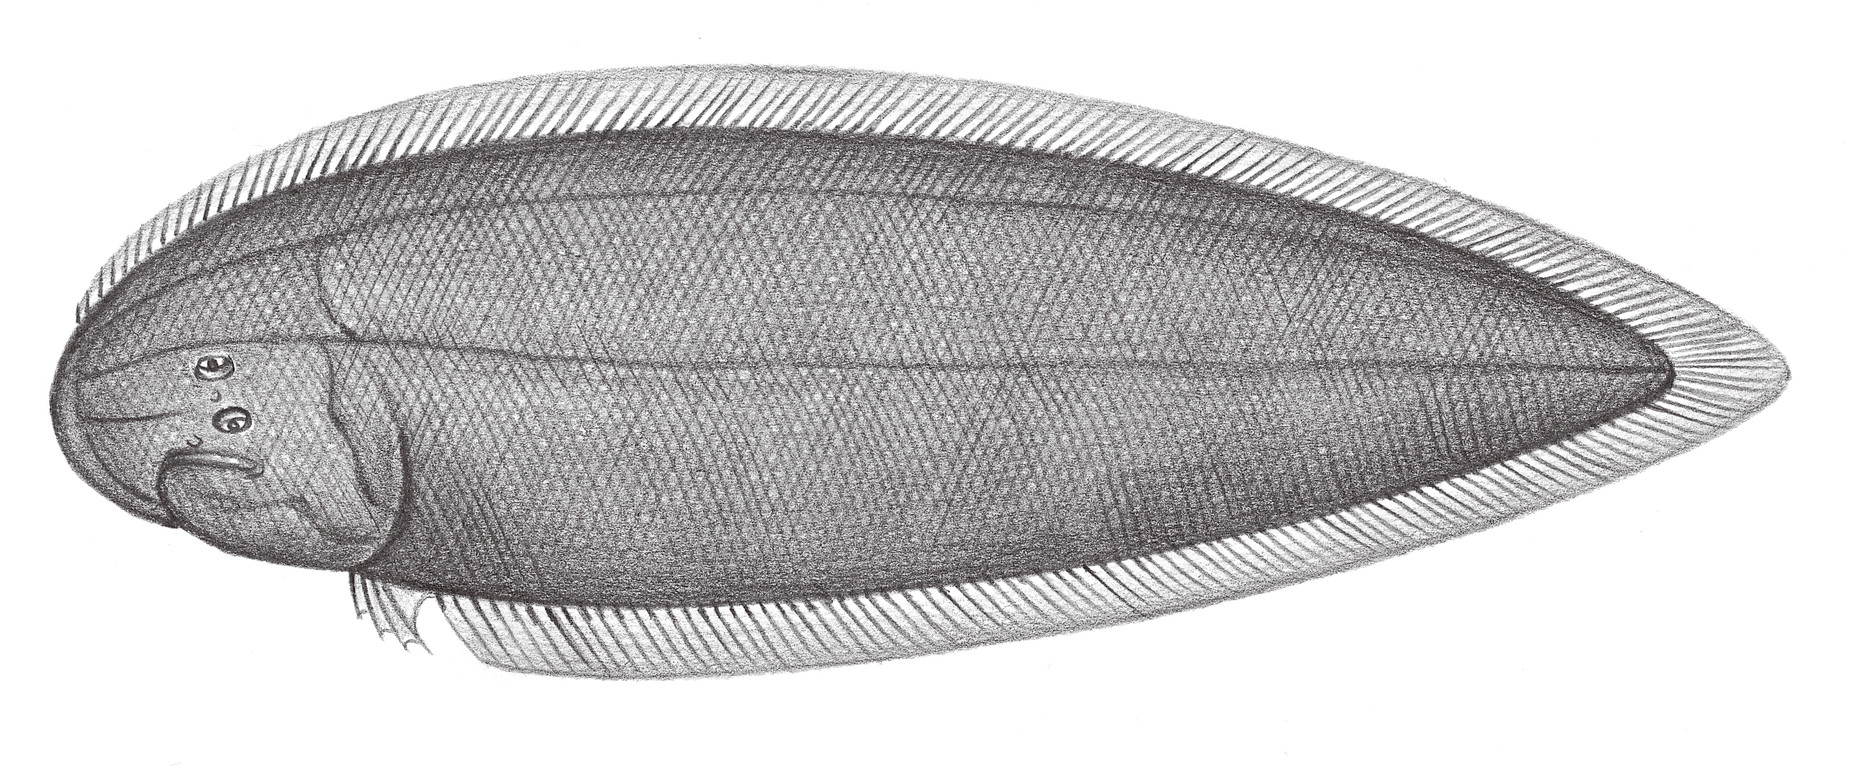 2455.	雙線舌鰨 Cynoglossus bilineatus (Lacépède, 1802)